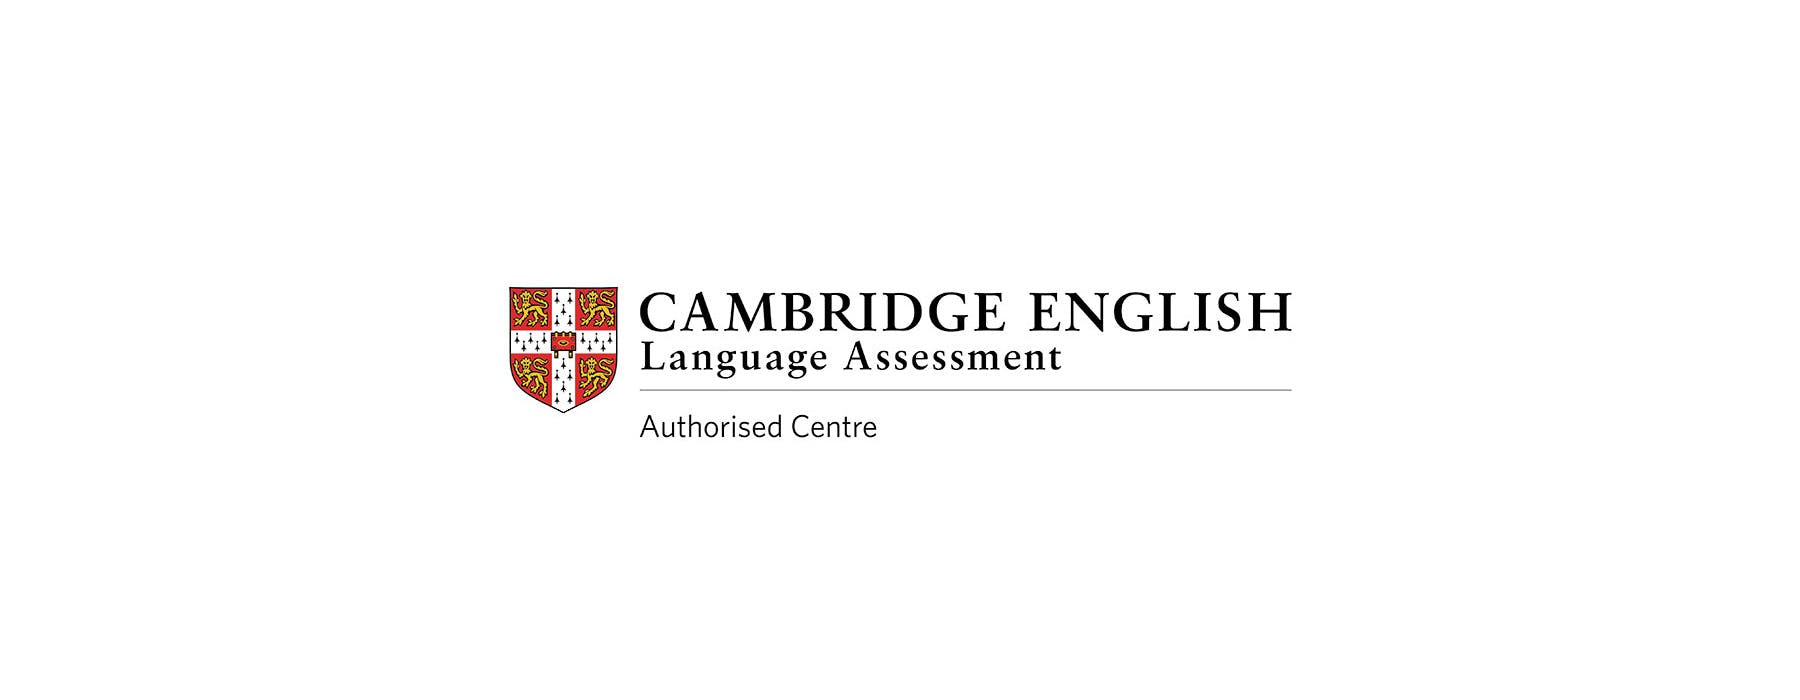 Acum și Centru certificat oficial de pregătire pentru examenele Cambridge English în Moldova